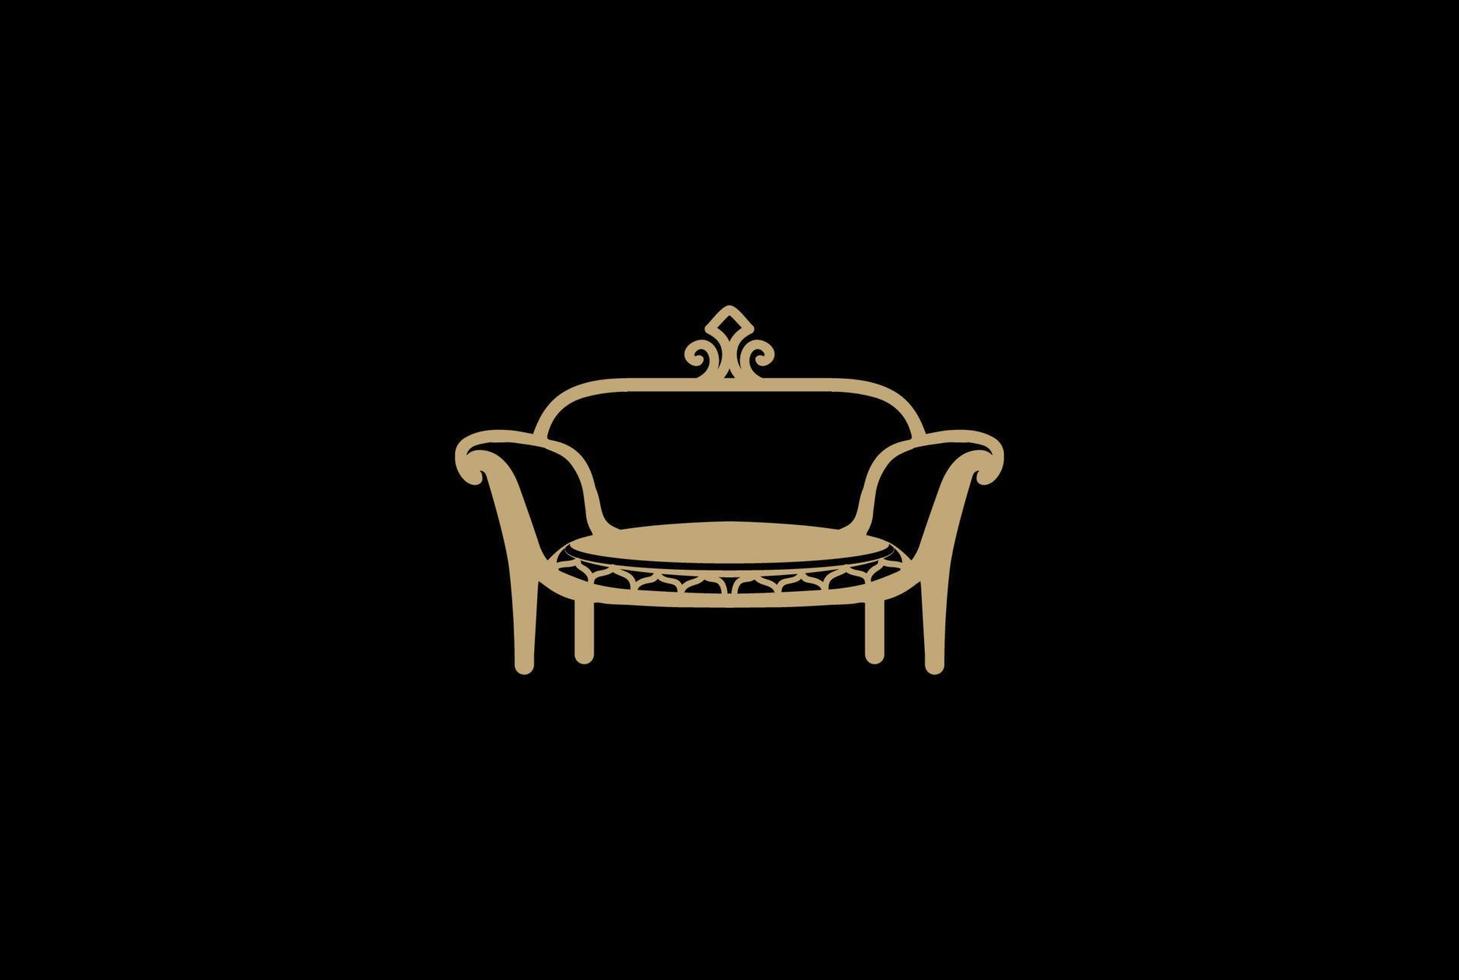 siège de chaise de canapé de luxe élégant pour le vecteur de conception de logo de meubles d'intérieur